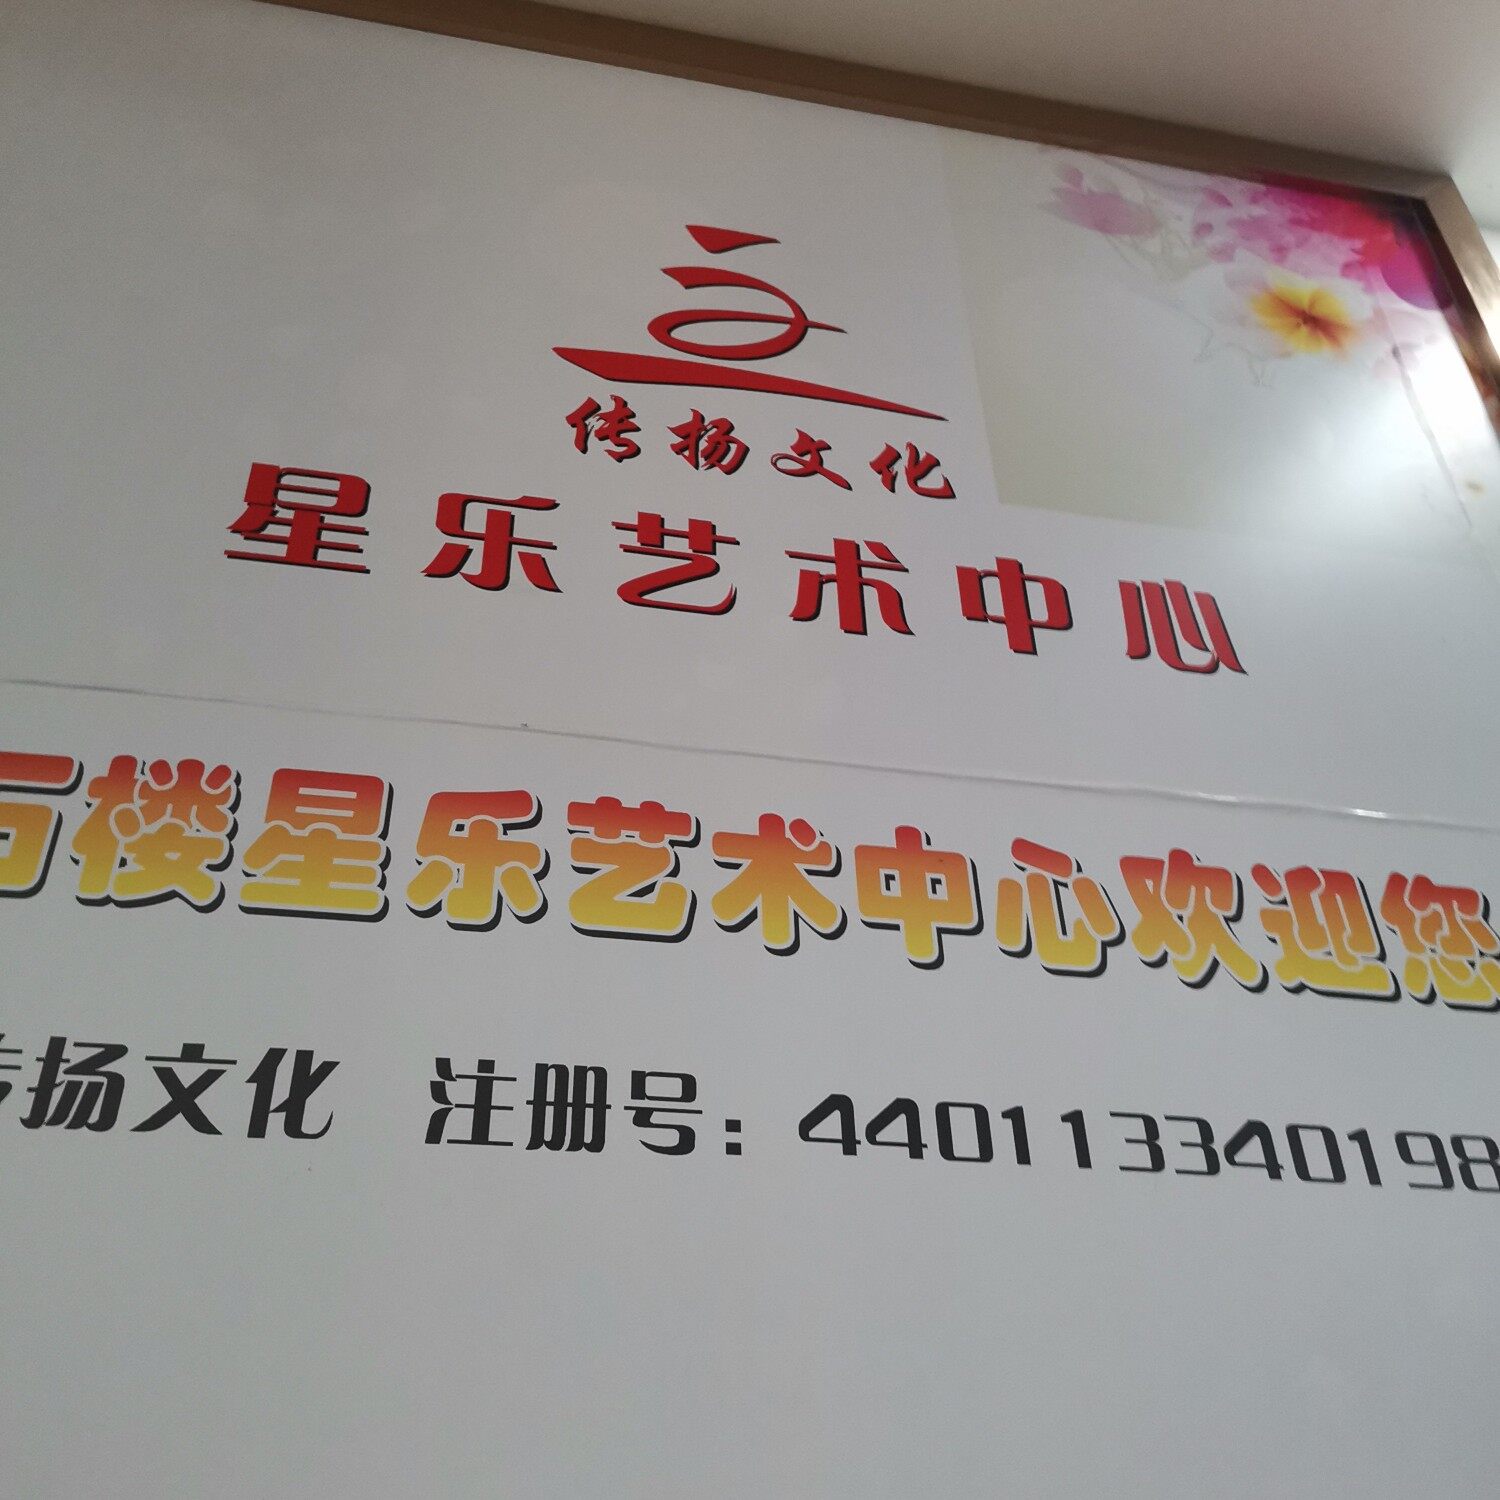 广州市传扬文化传播有限公司logo